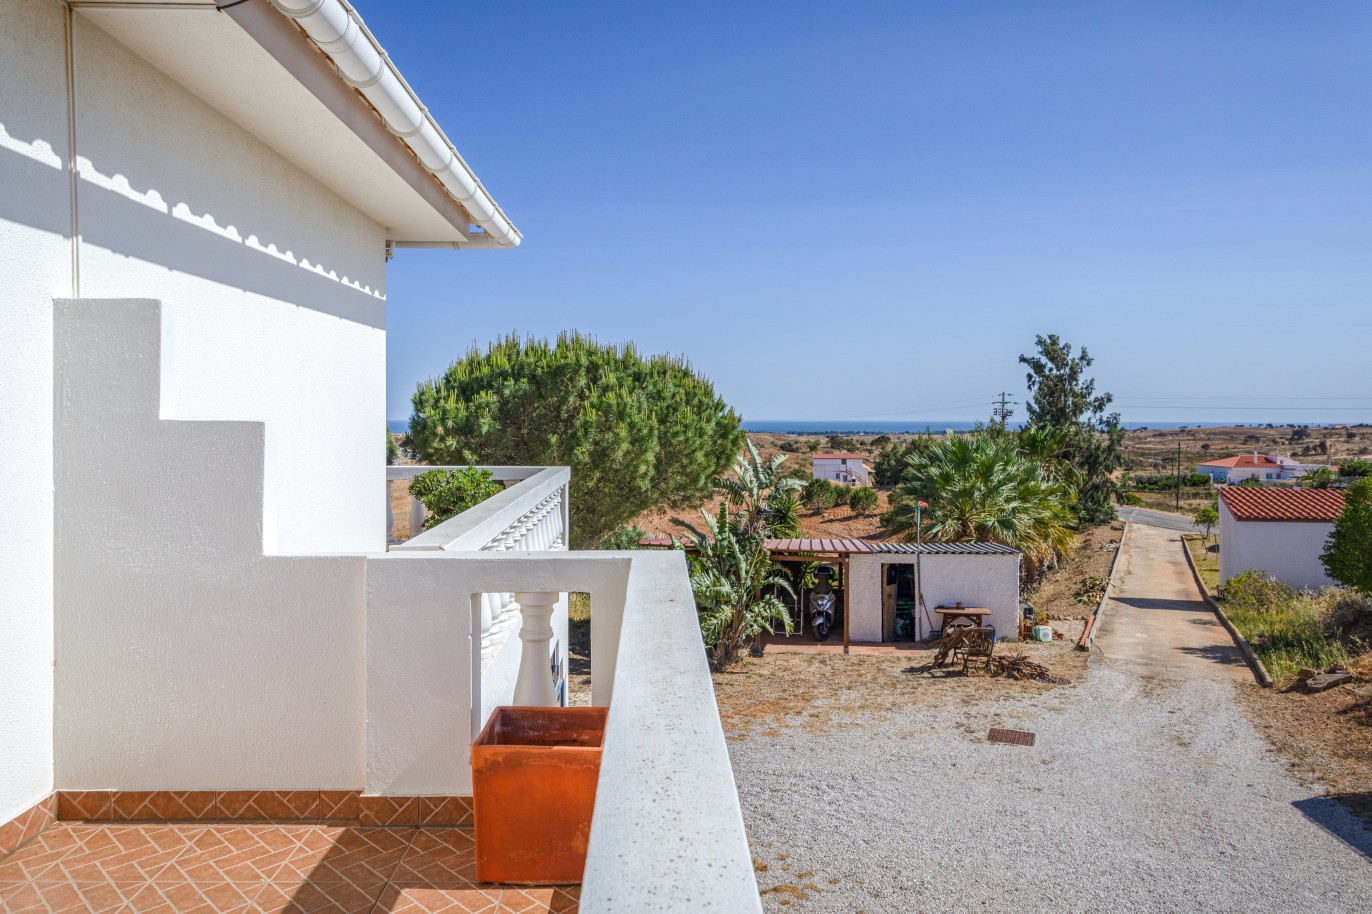 6 Bedroom Villa with pool for sale in Vila Nova de Cacela, Algarve_226526